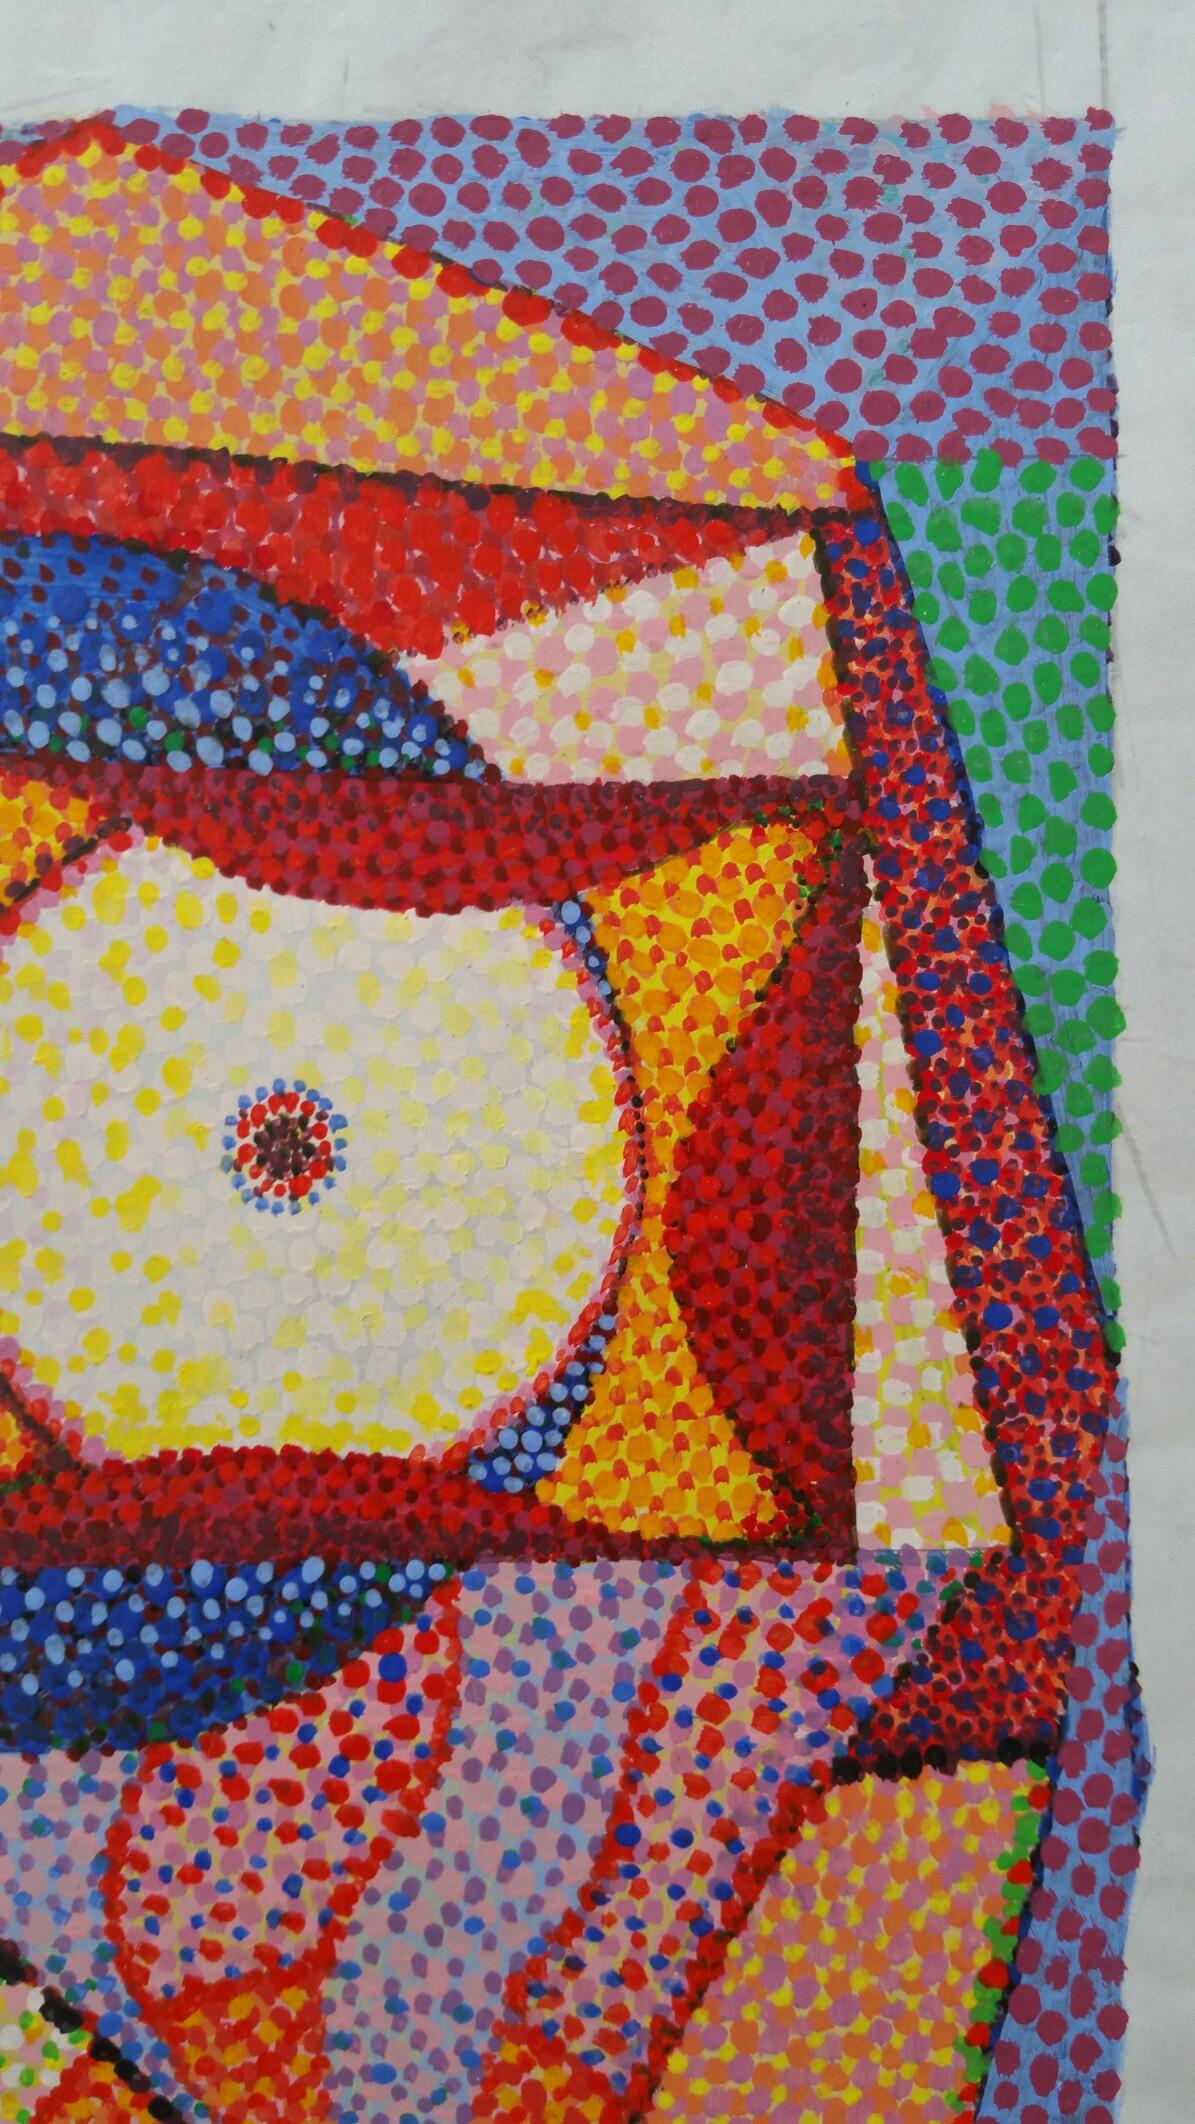 Dessin abstrait pointilliste
par Louis Bellon (français 1908-1998)
initialled lower right
peinture à la gouache sur papier, non encadrée
mesures : 8.75 x 6 pouces (l'ensemble de la feuille mesure 11.25 x 8.9 pouces)

provenance : collection privée